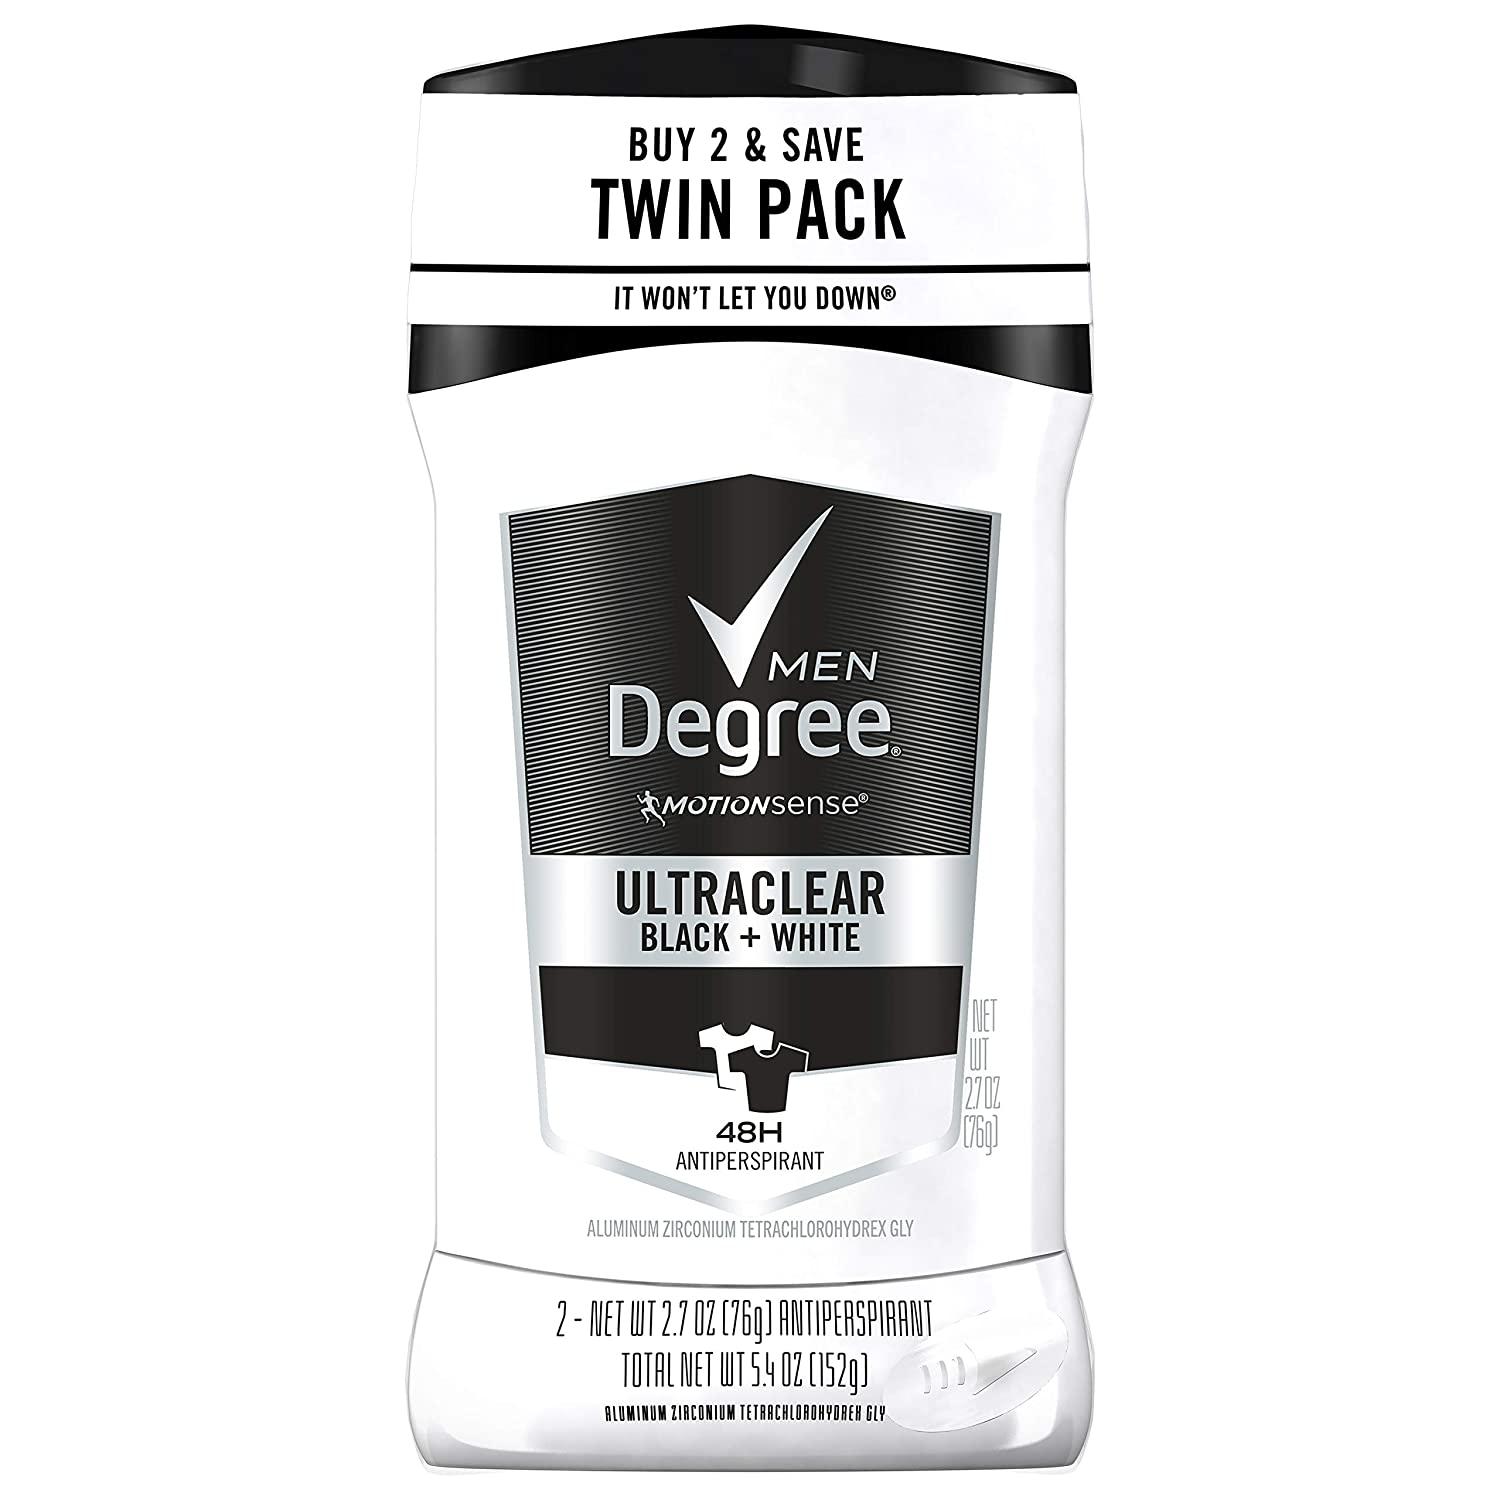 2 Degree Men UltraClear Black Deodorant for $4.89